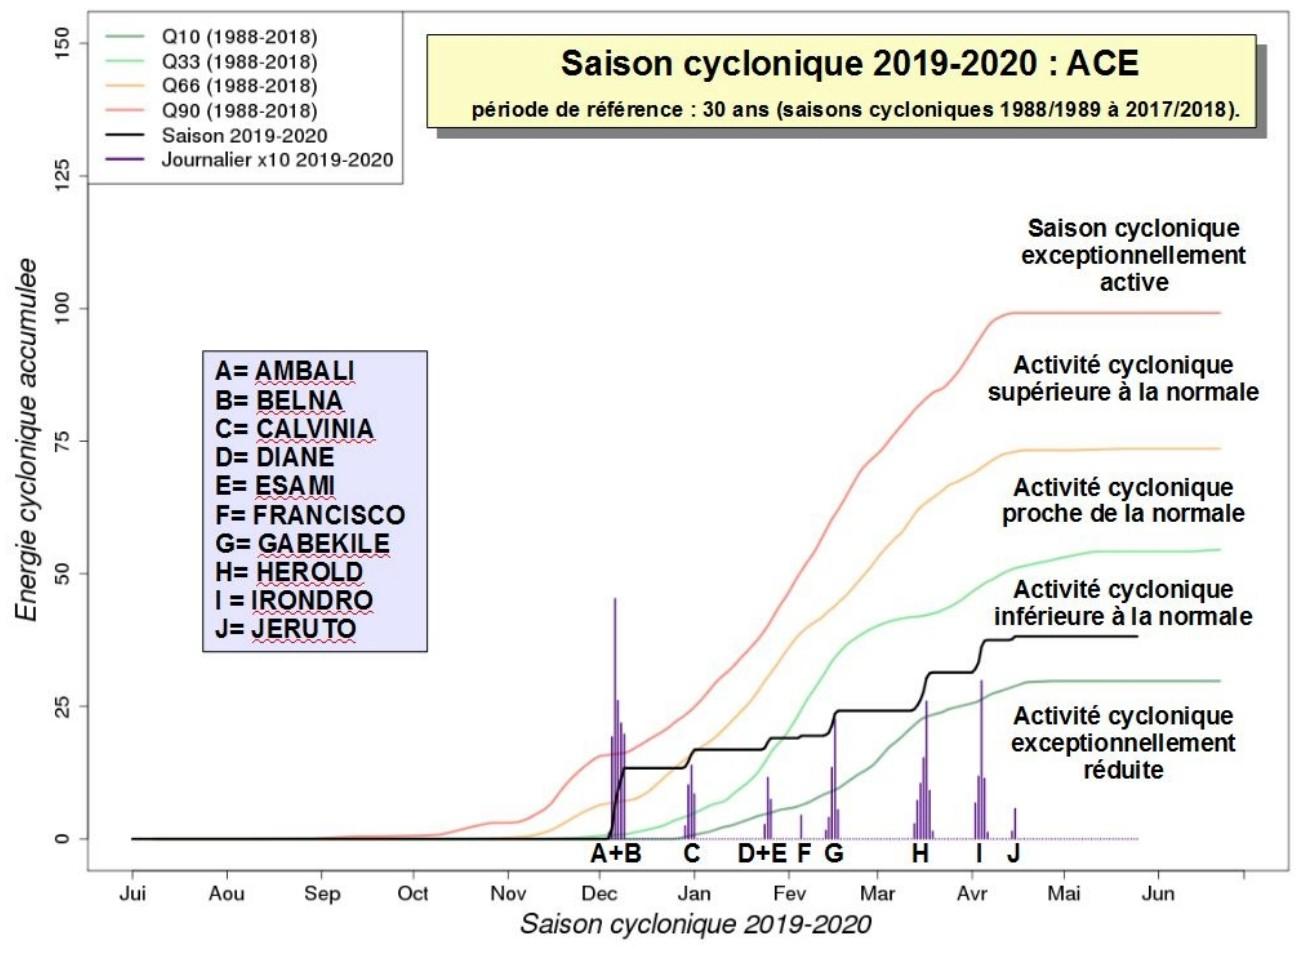 Indice ace saison cyclonique 2019 2020